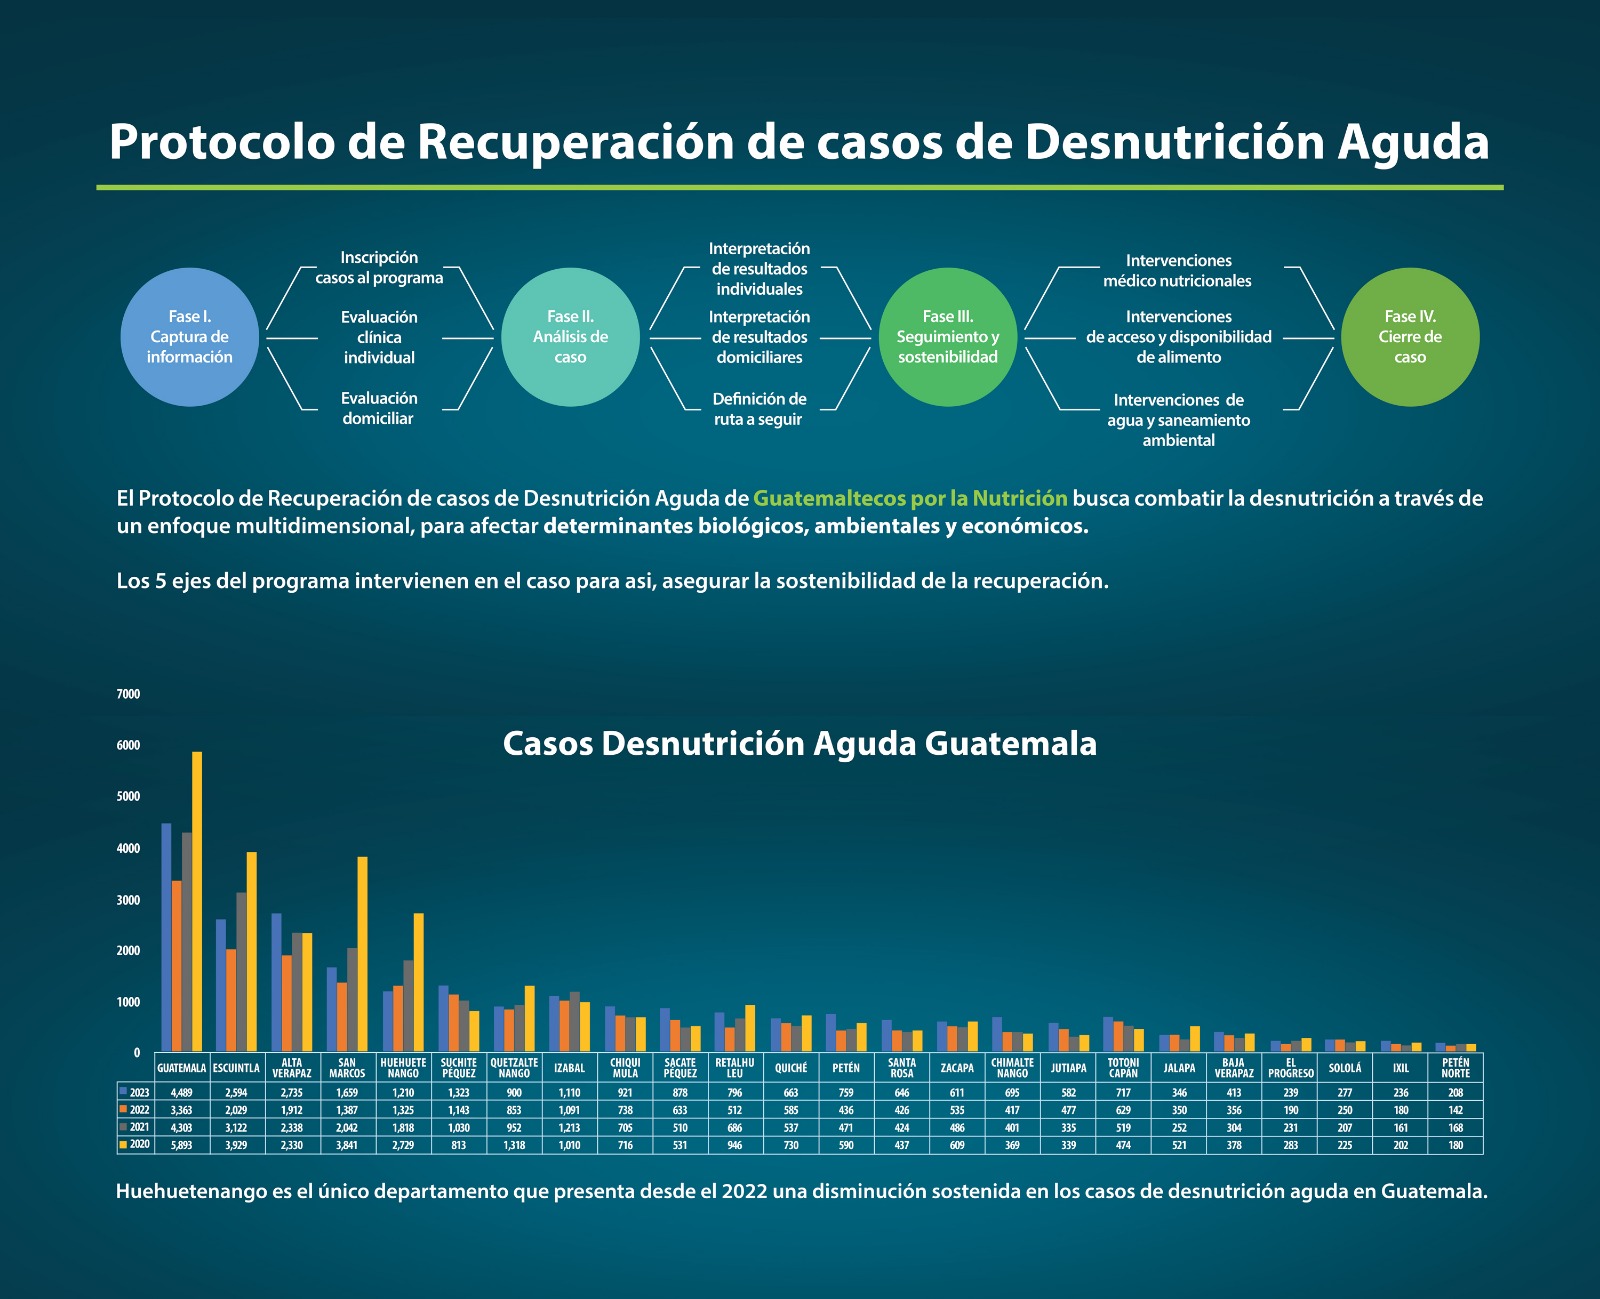 El Protocolo de recuperación de casos de desnutrición aguda de Guatemaltecos por la nutrición, busca combatir la desnutrición a través de un enfoque multidimensional. Foto: Castillo Hermanos